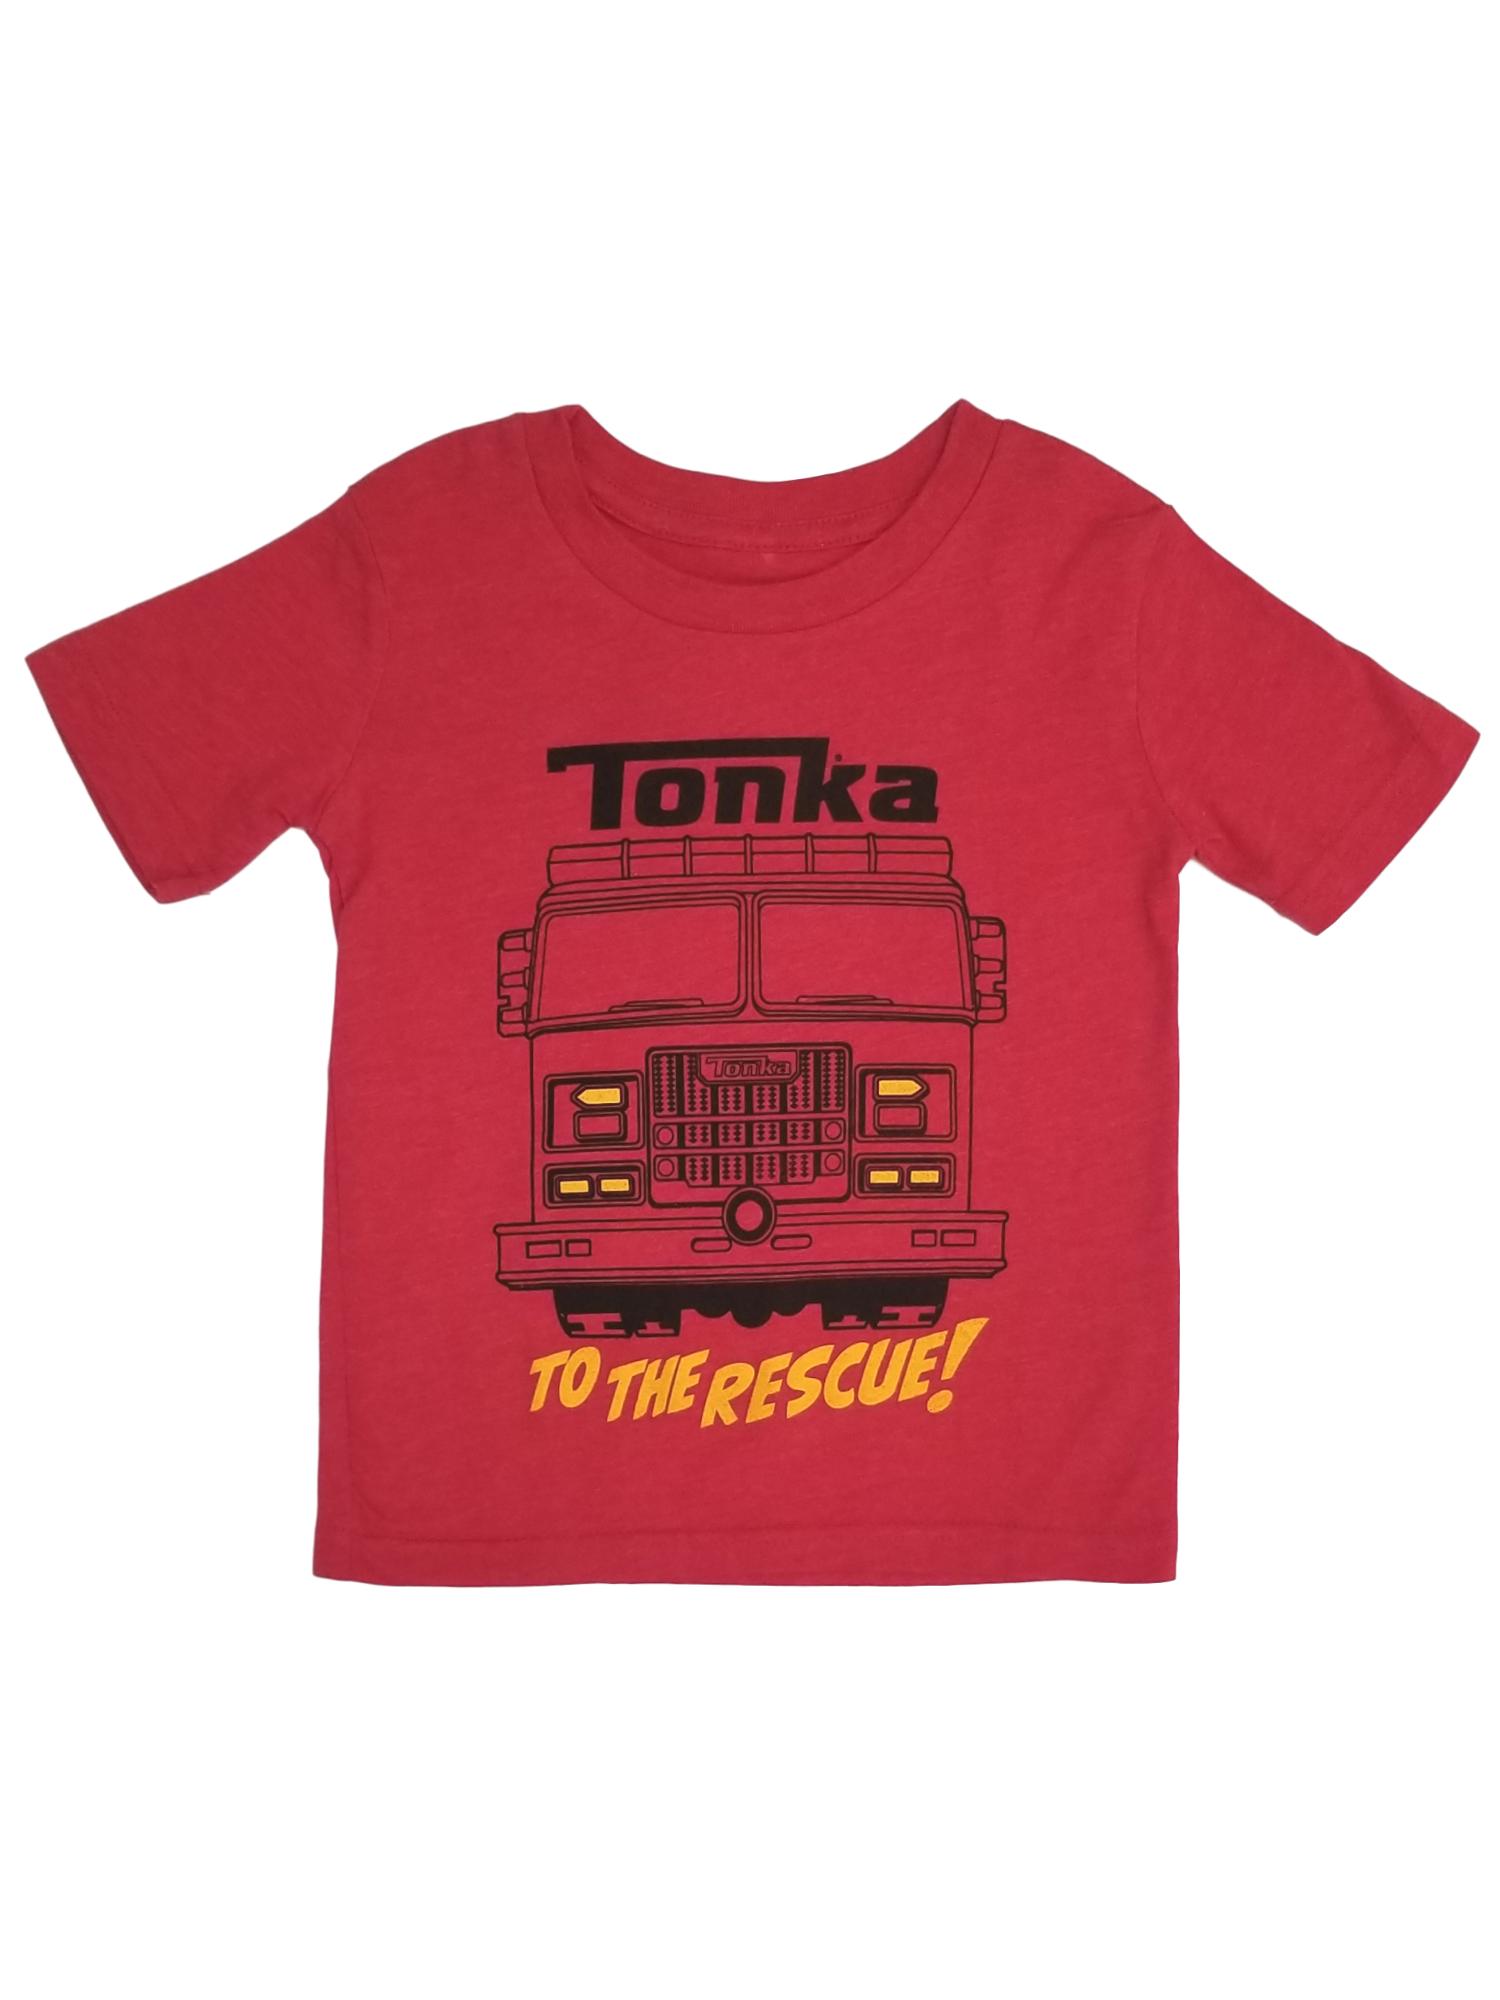 Tonka Toddler Boys Red Short Sleeve Fire Truck T-Shirt Rescue Tee Shirt